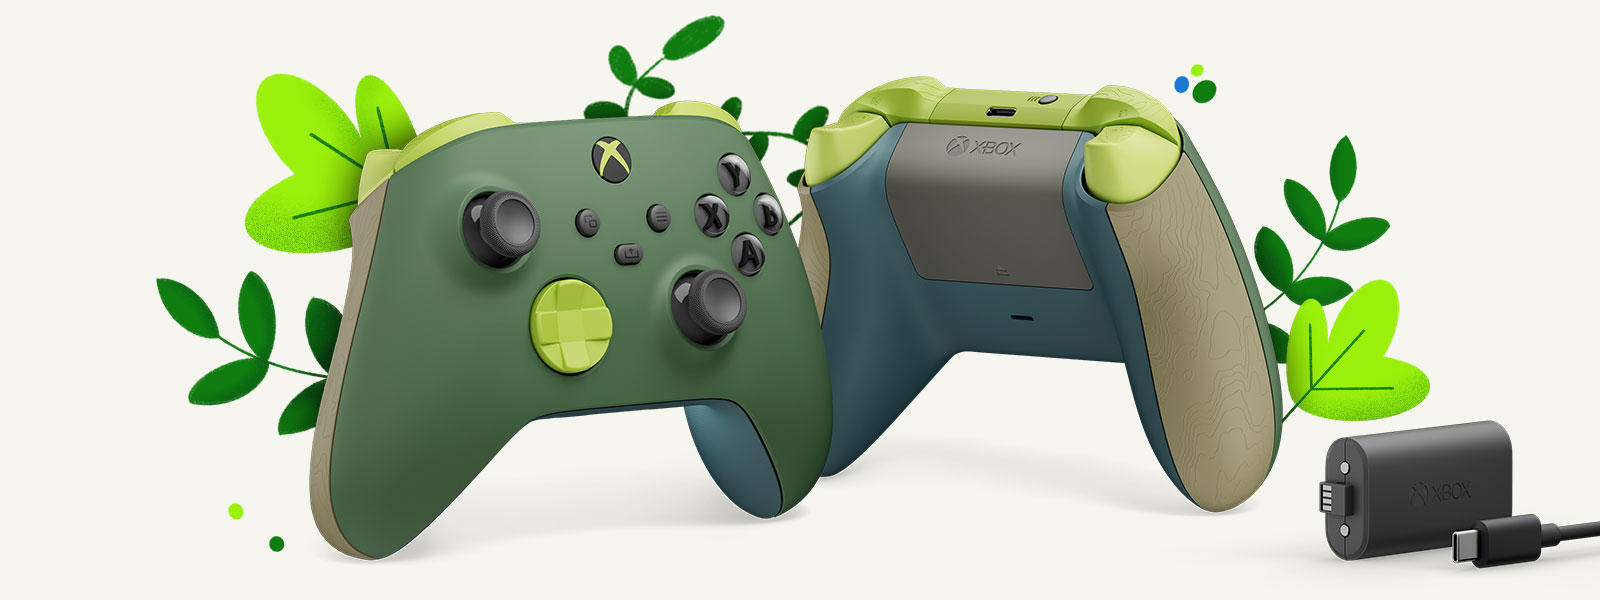 Két vezérlő egymás mellett, középre igazítva, zöld növények előtt. Az első kontroller szemből a Remix Special Edition vezeték nélküli kontroller, a másik pedig a Remix Special Edition vezeték nélküli kontroller hátulról. Az Xbox újratölthető akkumulátorcsomag a jobb szélen látható.